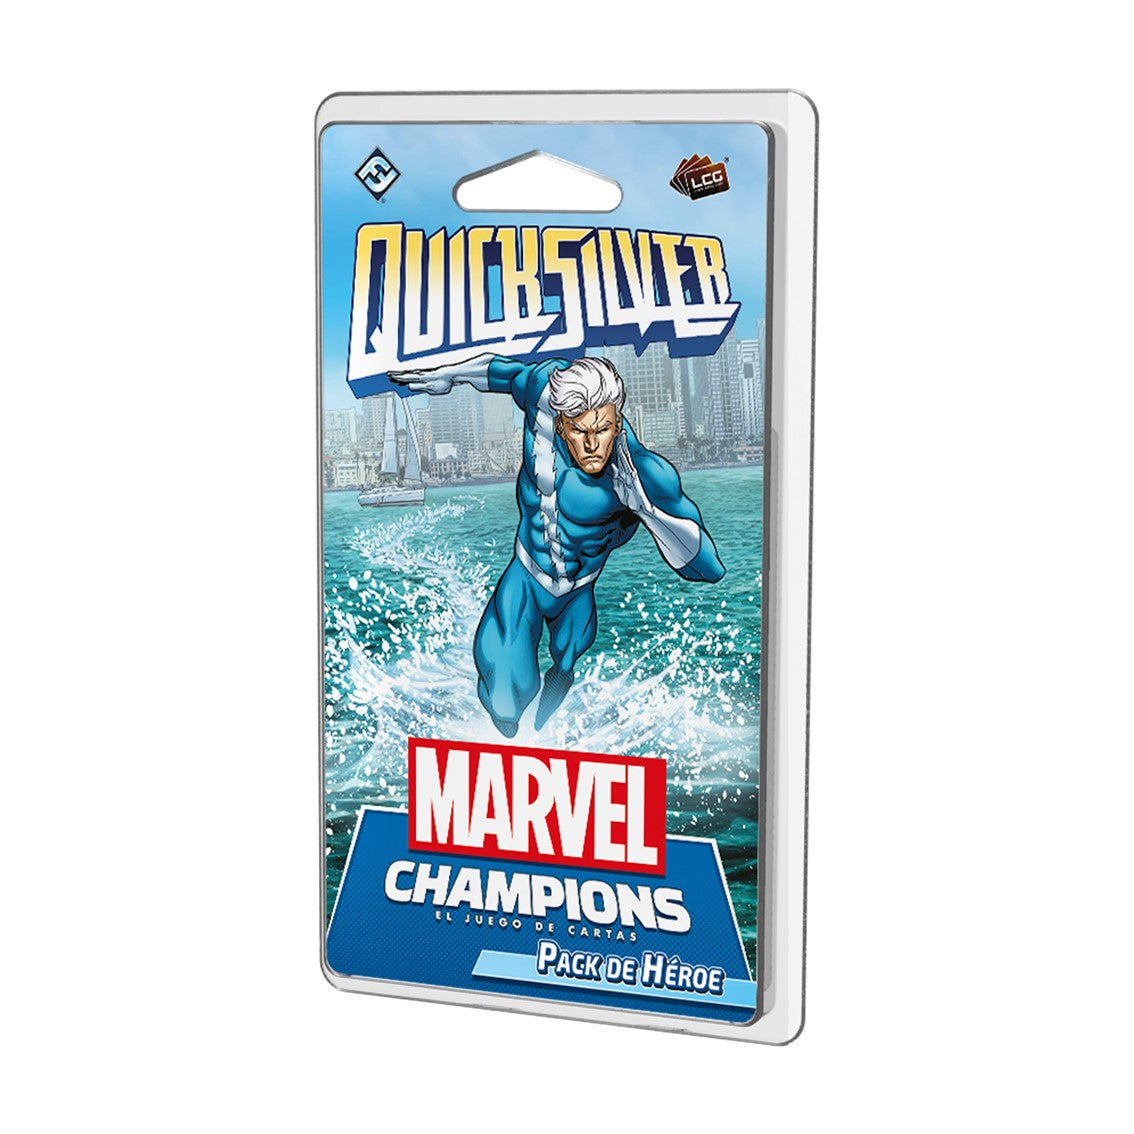 Juego de mesa Marvel Champions: Quicksilver (pack de héroe)